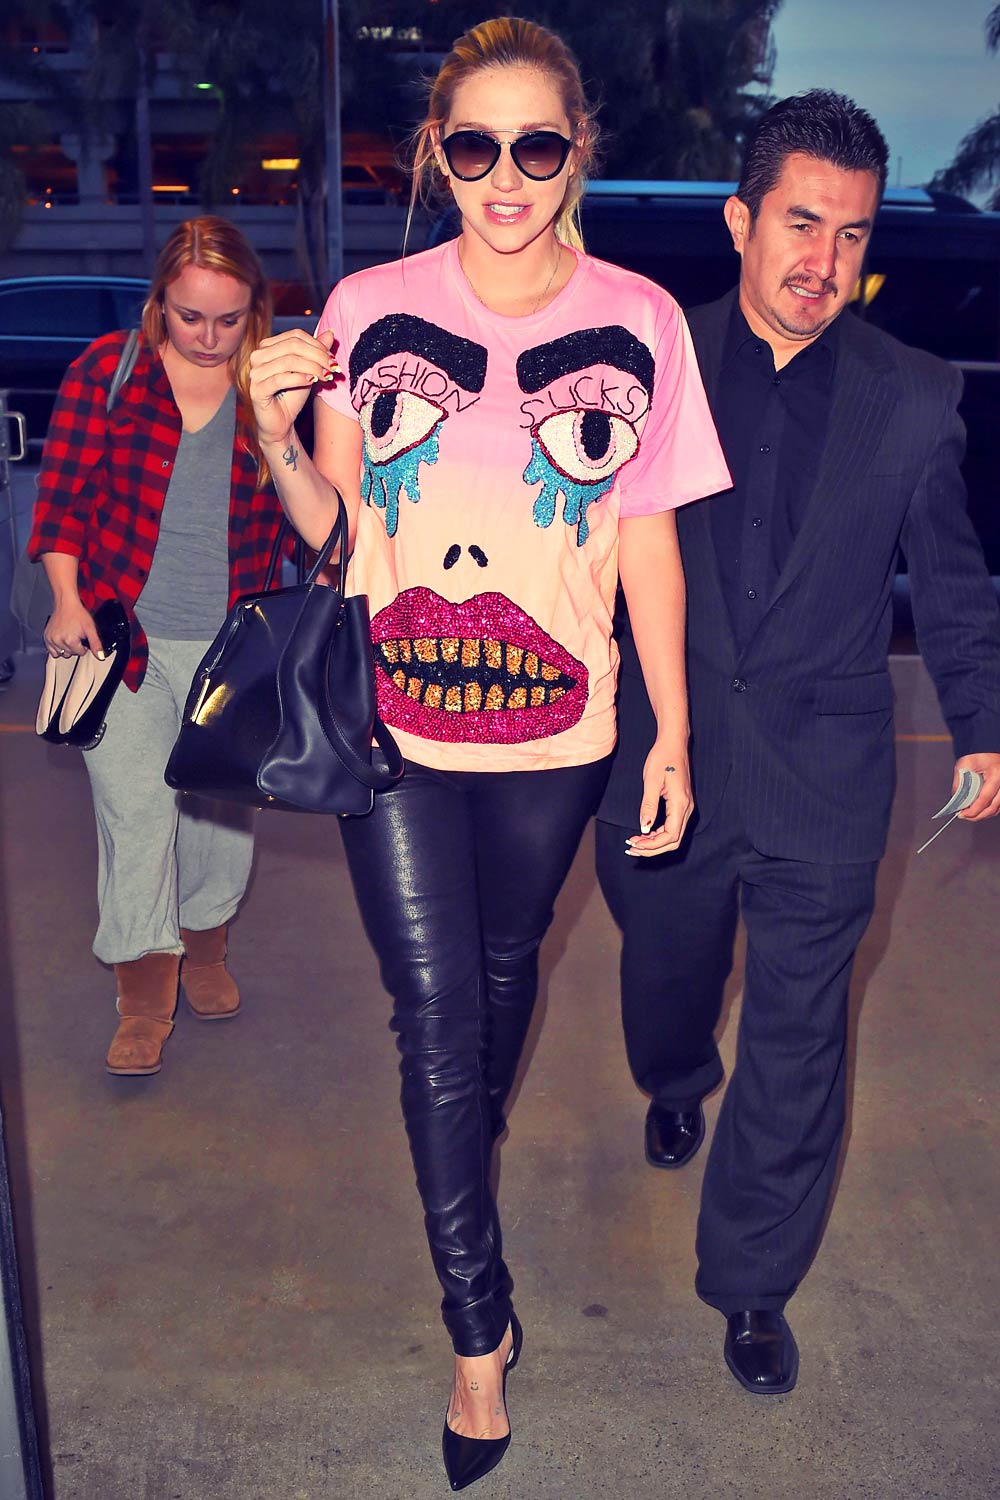 Kesha at LAX